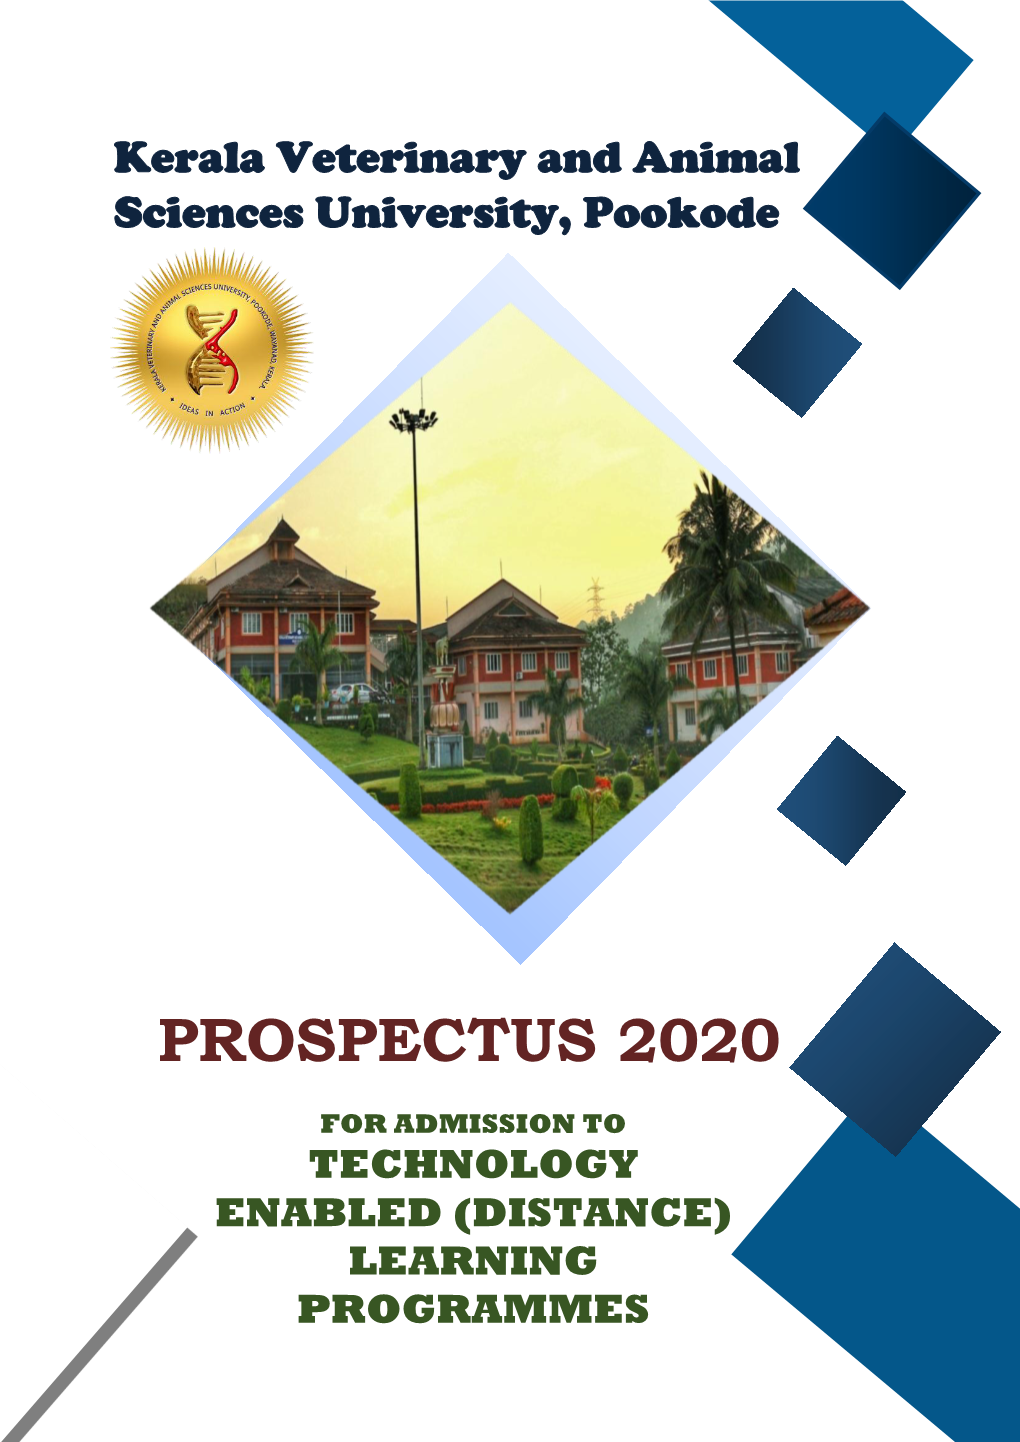 Prospectus 2020